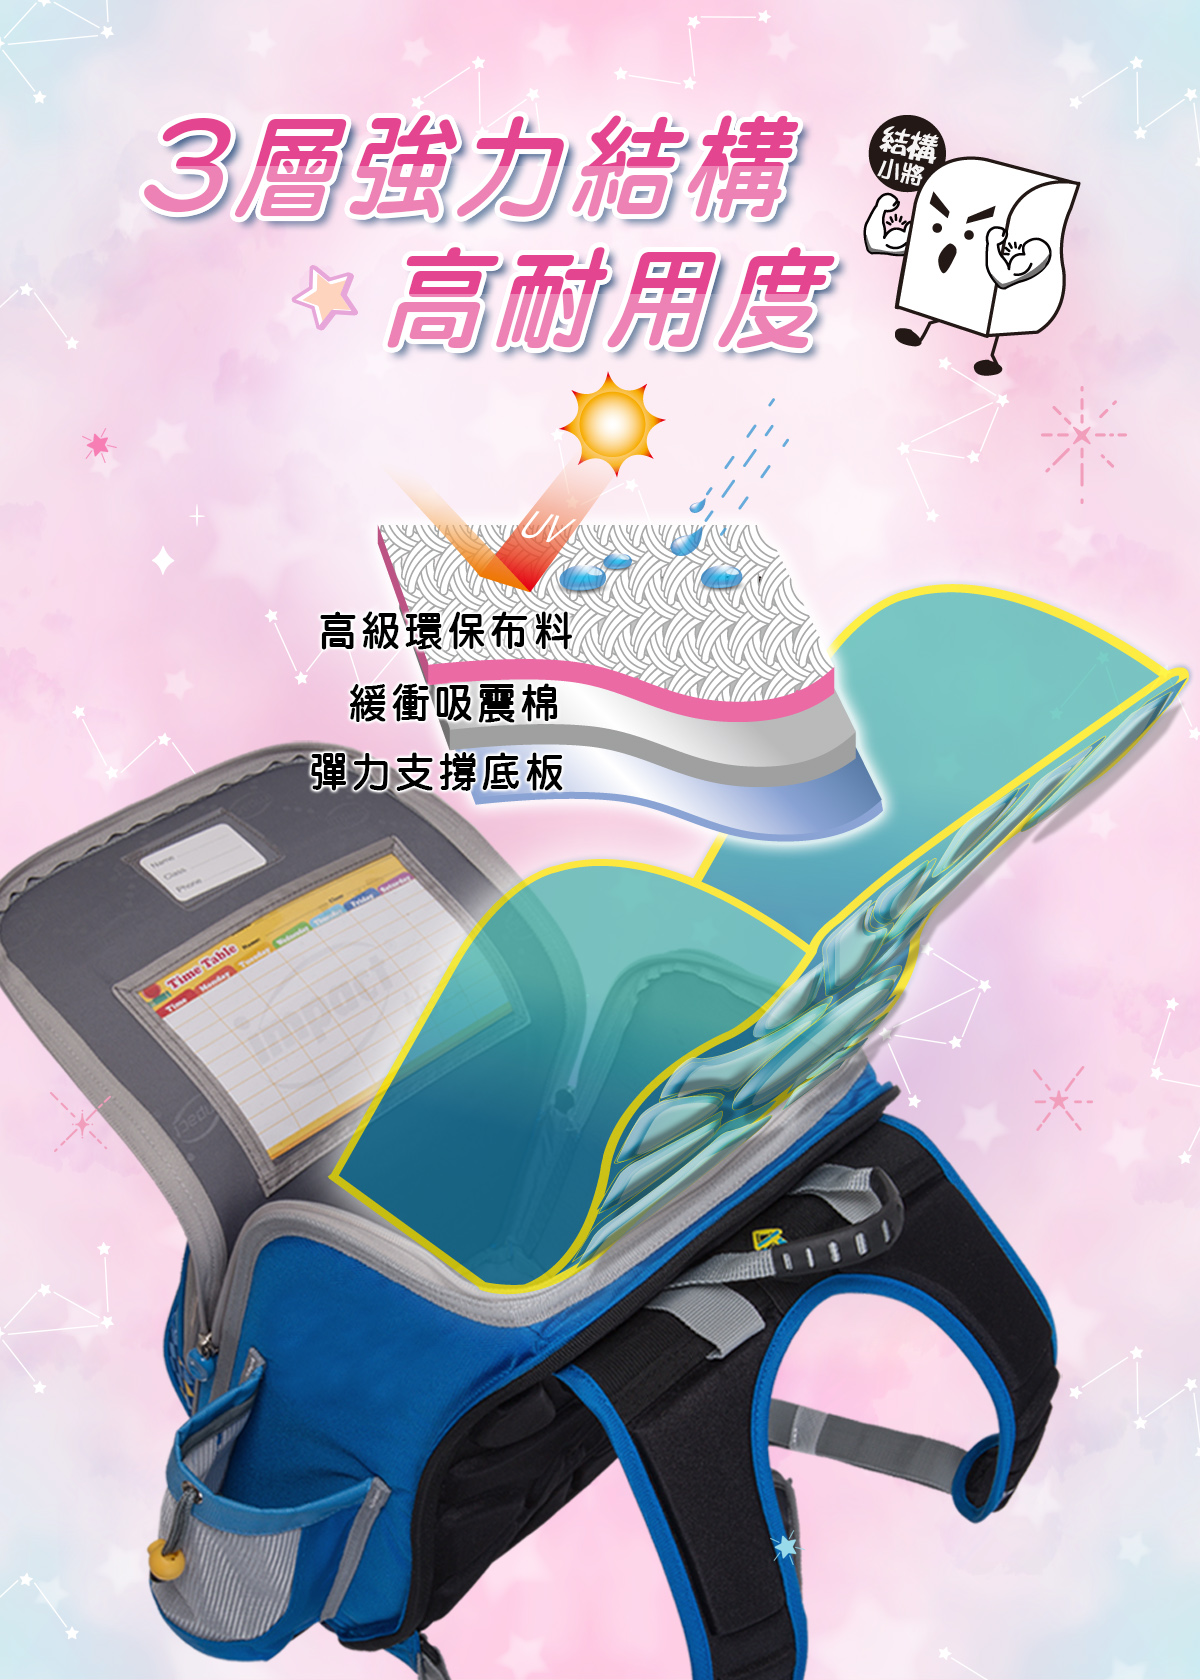 【IMPACT】怡寶懸浮磁扣新世代標準型護脊書包-小-獨角獸 IM00707PK